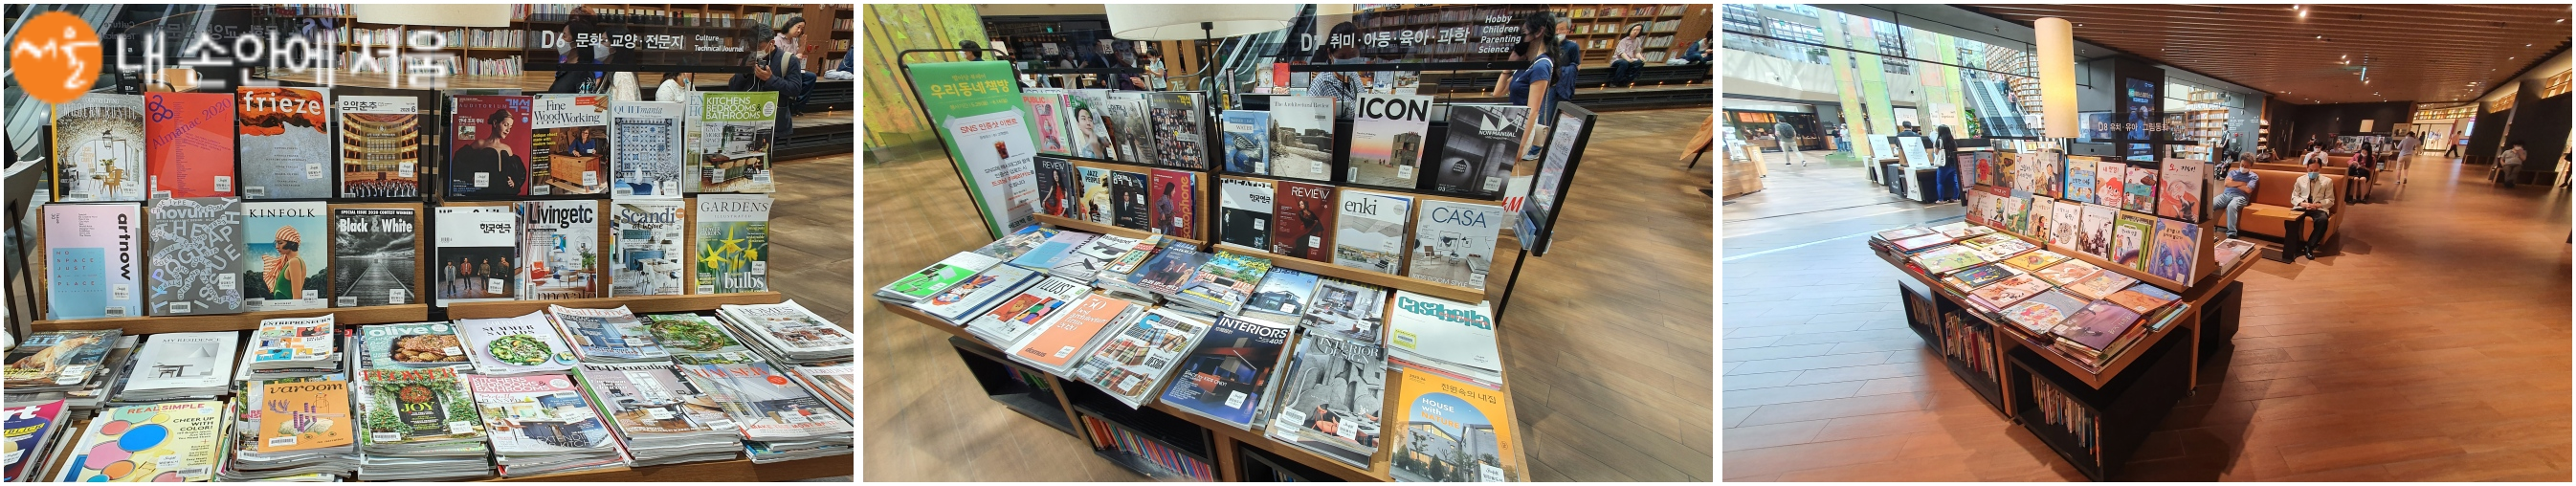 별마당 도서관에서는 다양한 책들과 잡지를 무료로 열람할 수 있다